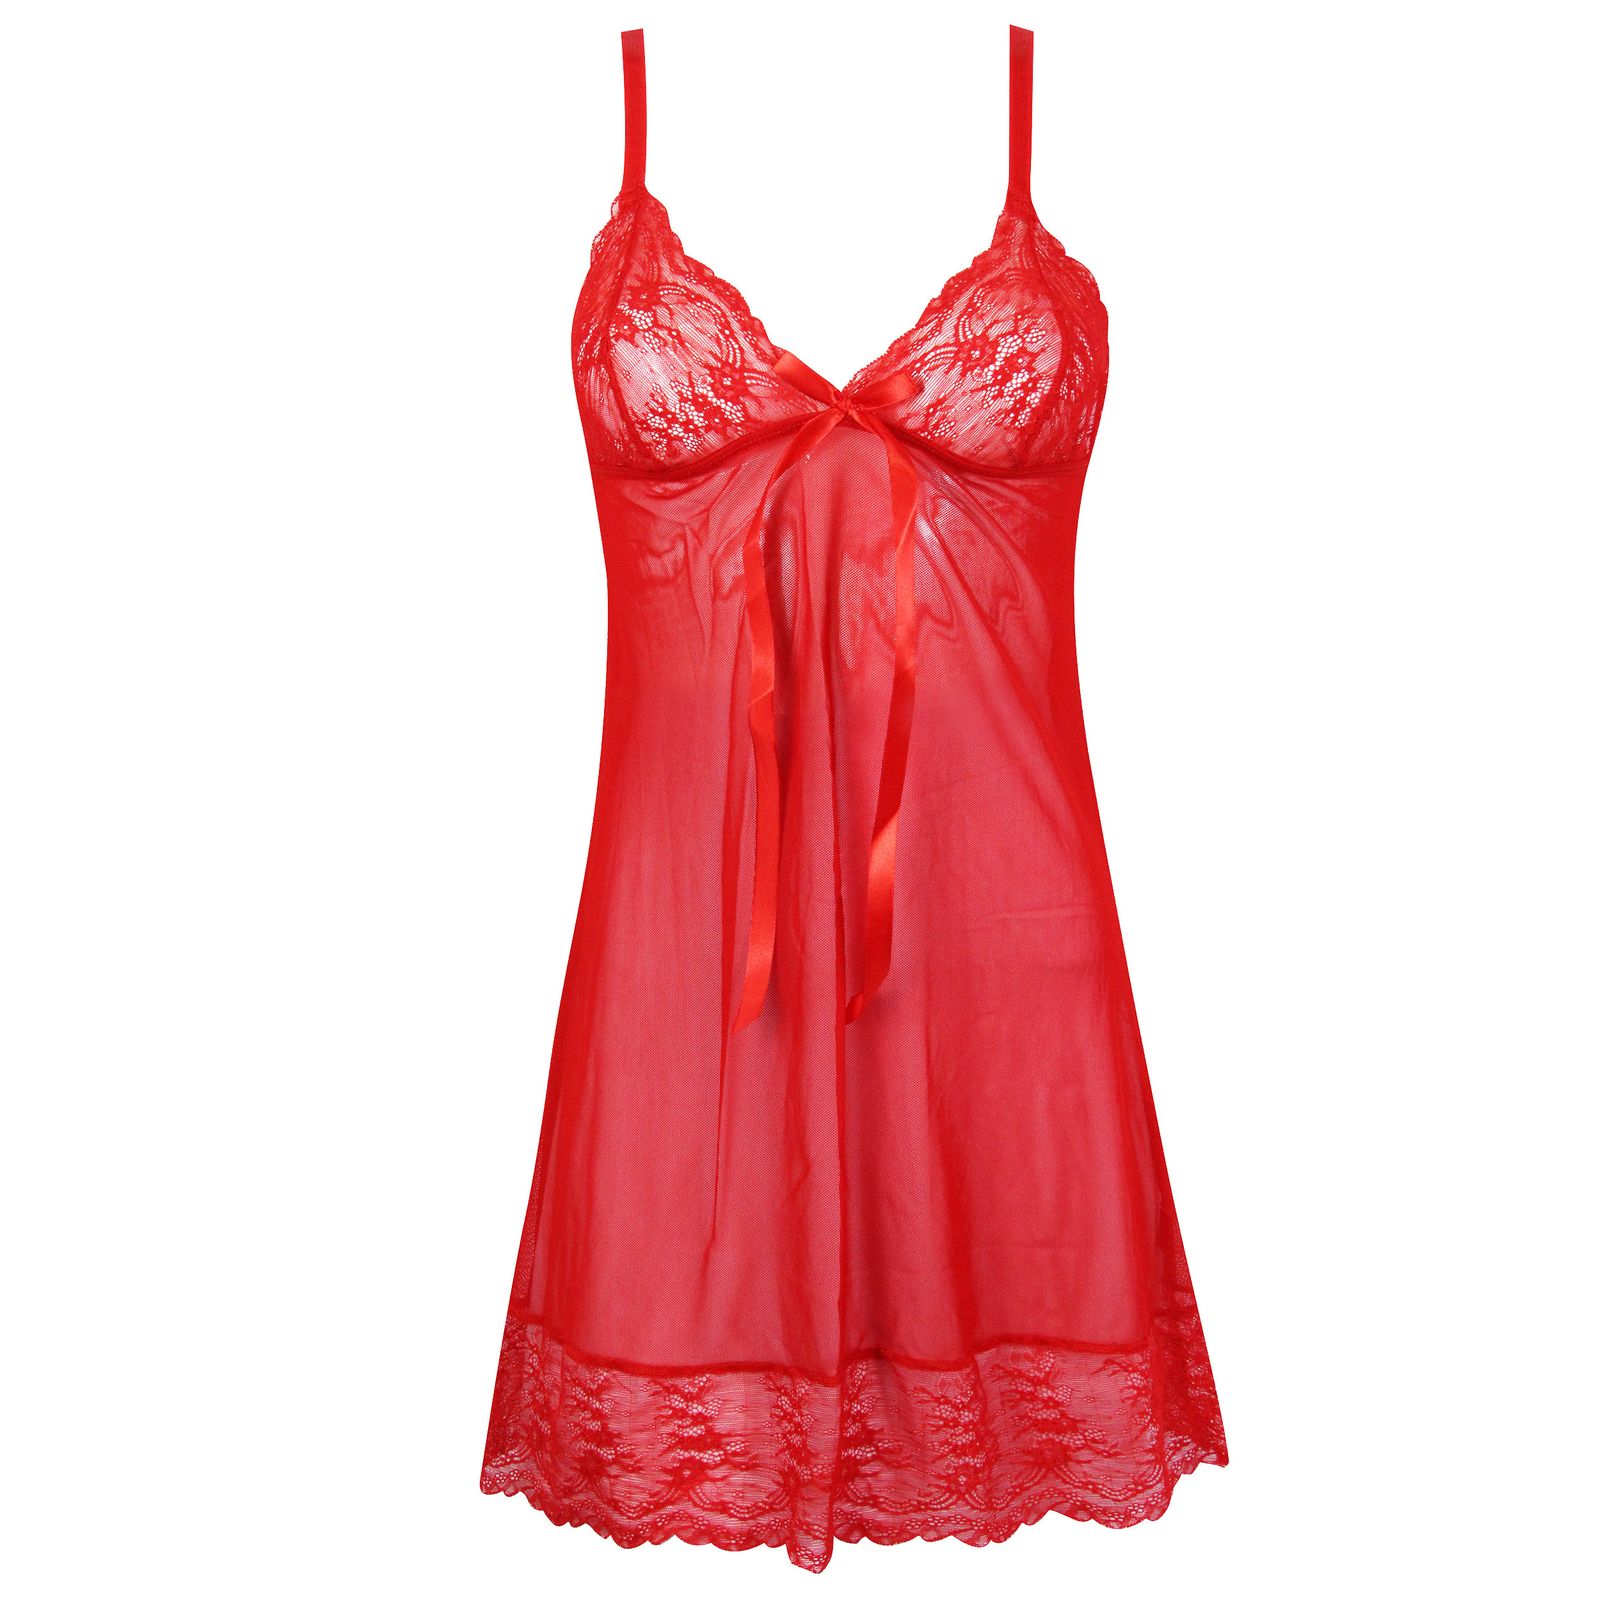 لباس خواب زنانه ماییلدا مدل 3685-804 رنگ قرمز -  - 4